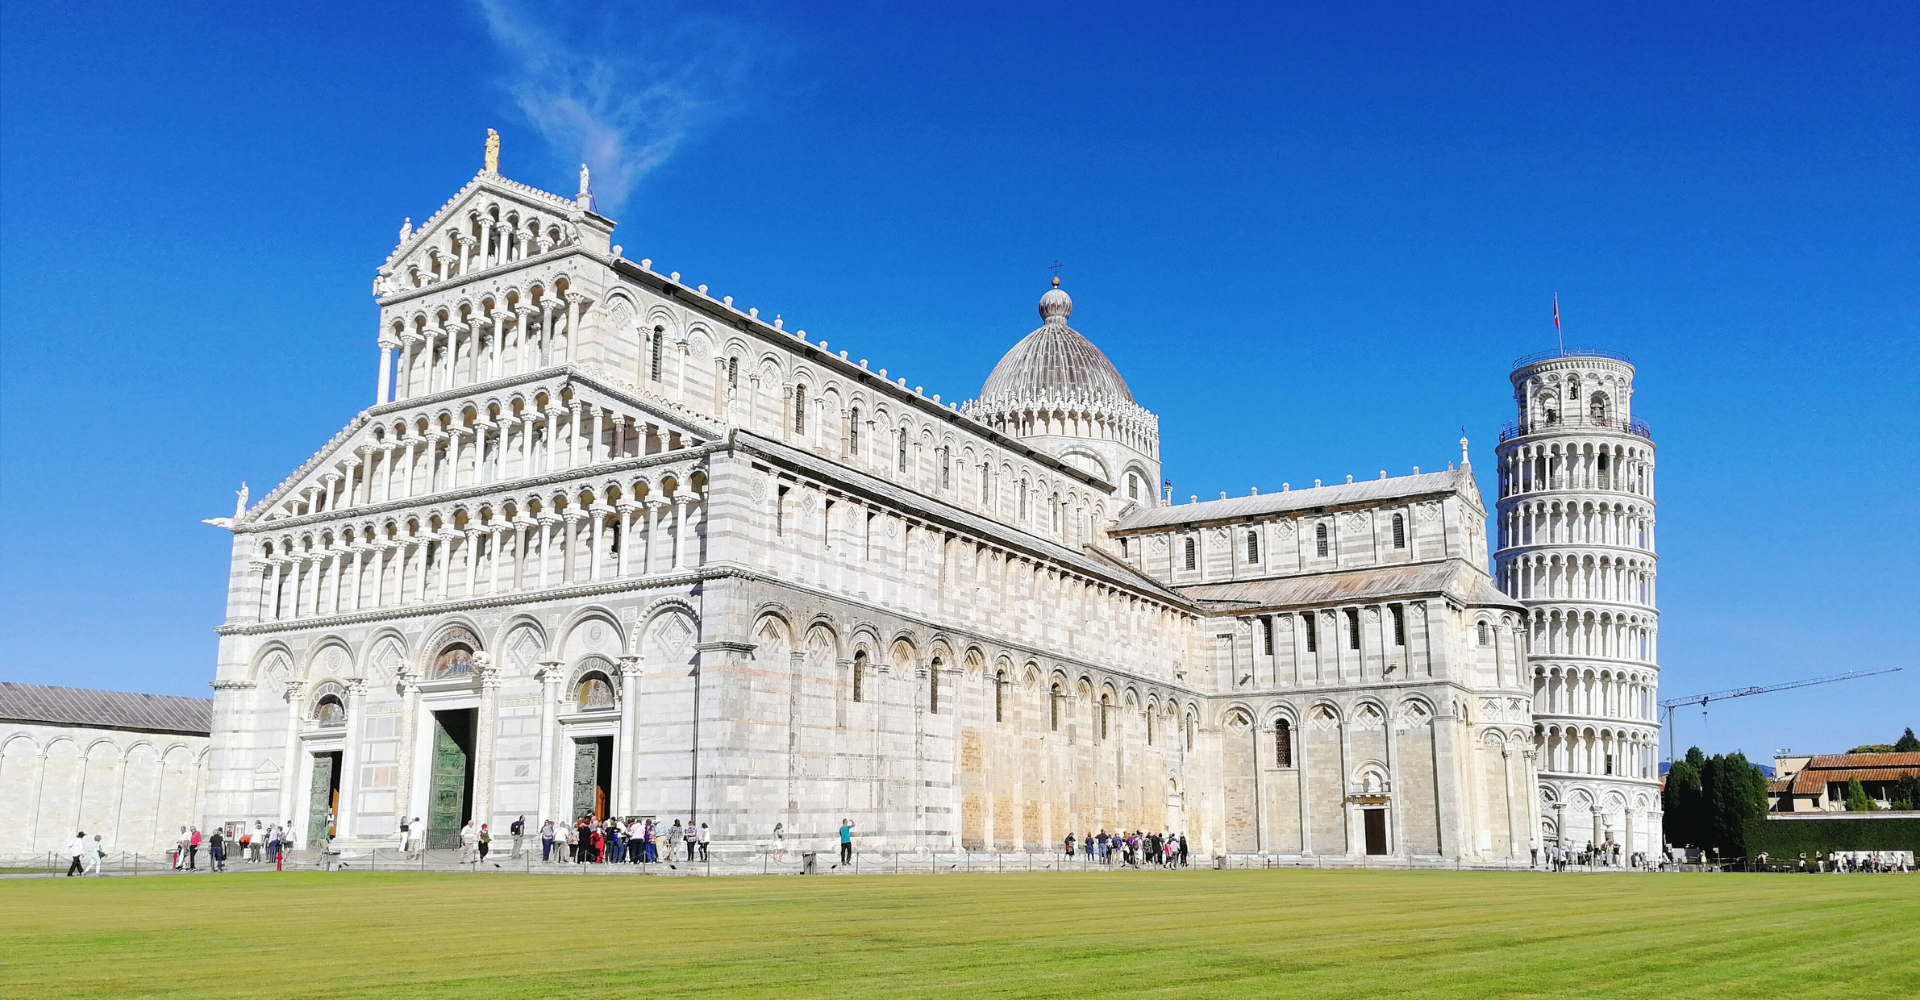 Cinco días en el sillín de tu bicicleta para descubrir Pisa, Lucca, VInci y Florencia 